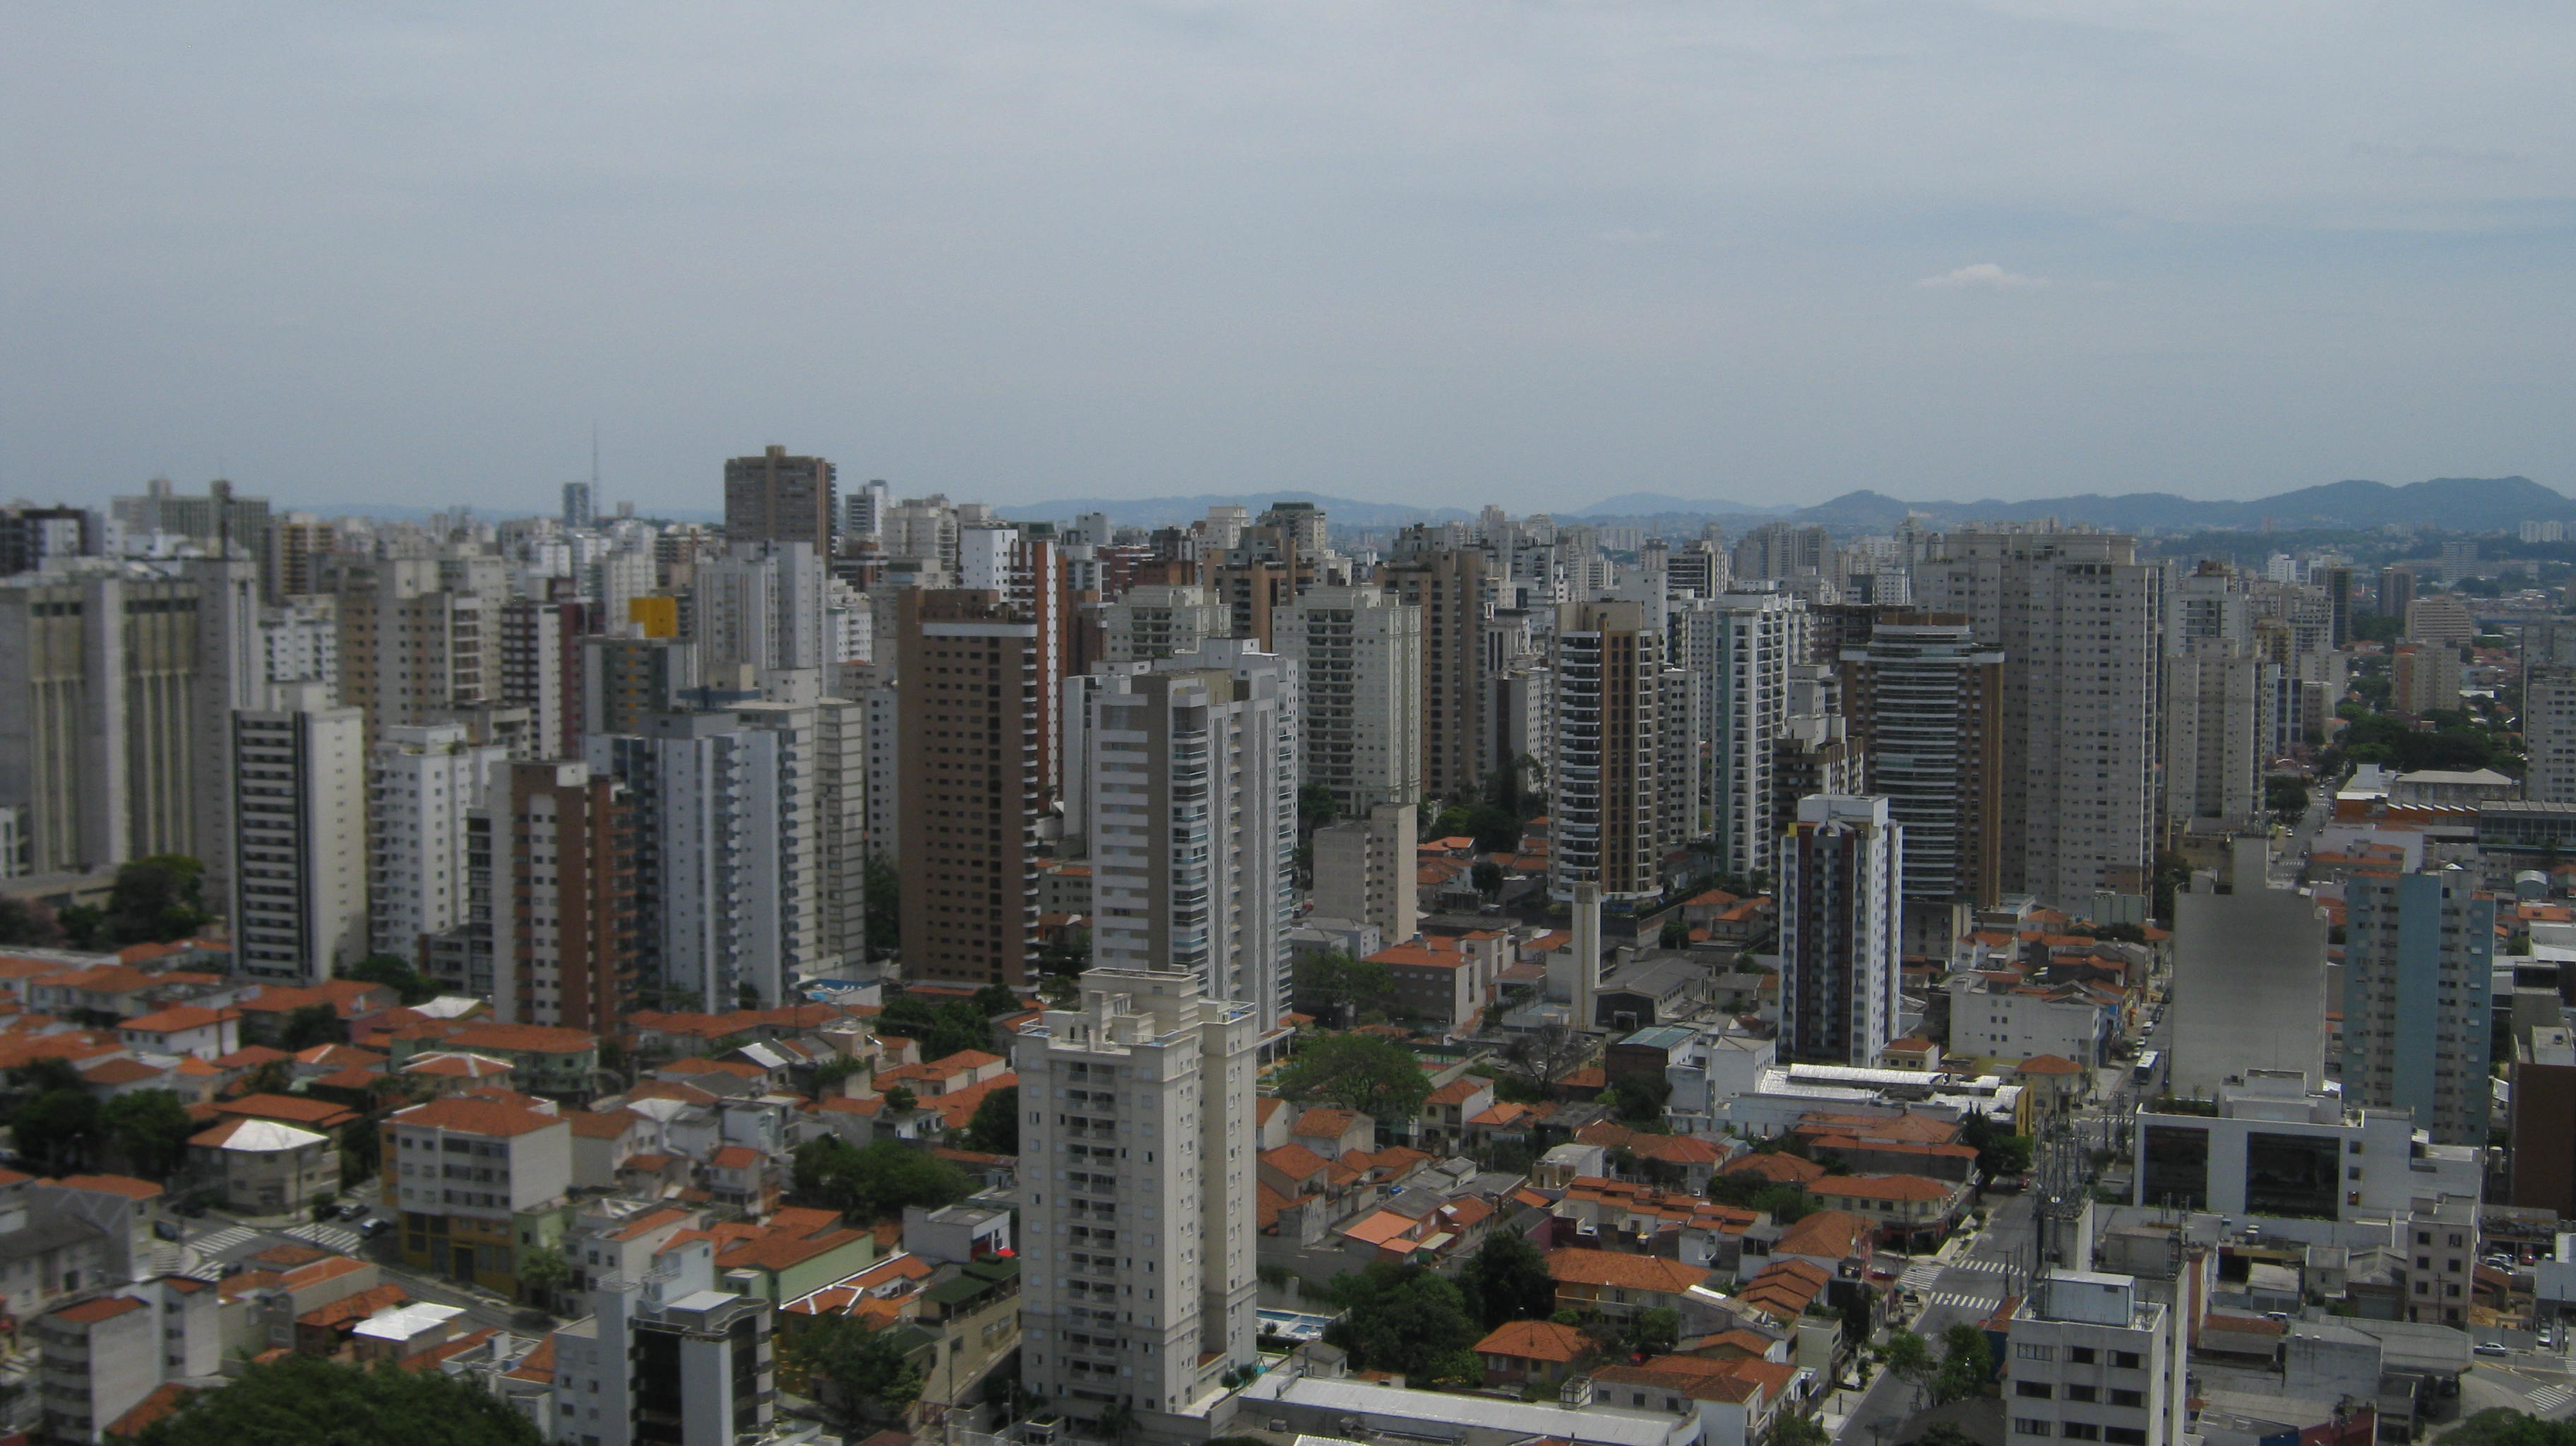 Die Emerging Markets sind sehr heterogen: Hochhauswohnungen in São Paulo.